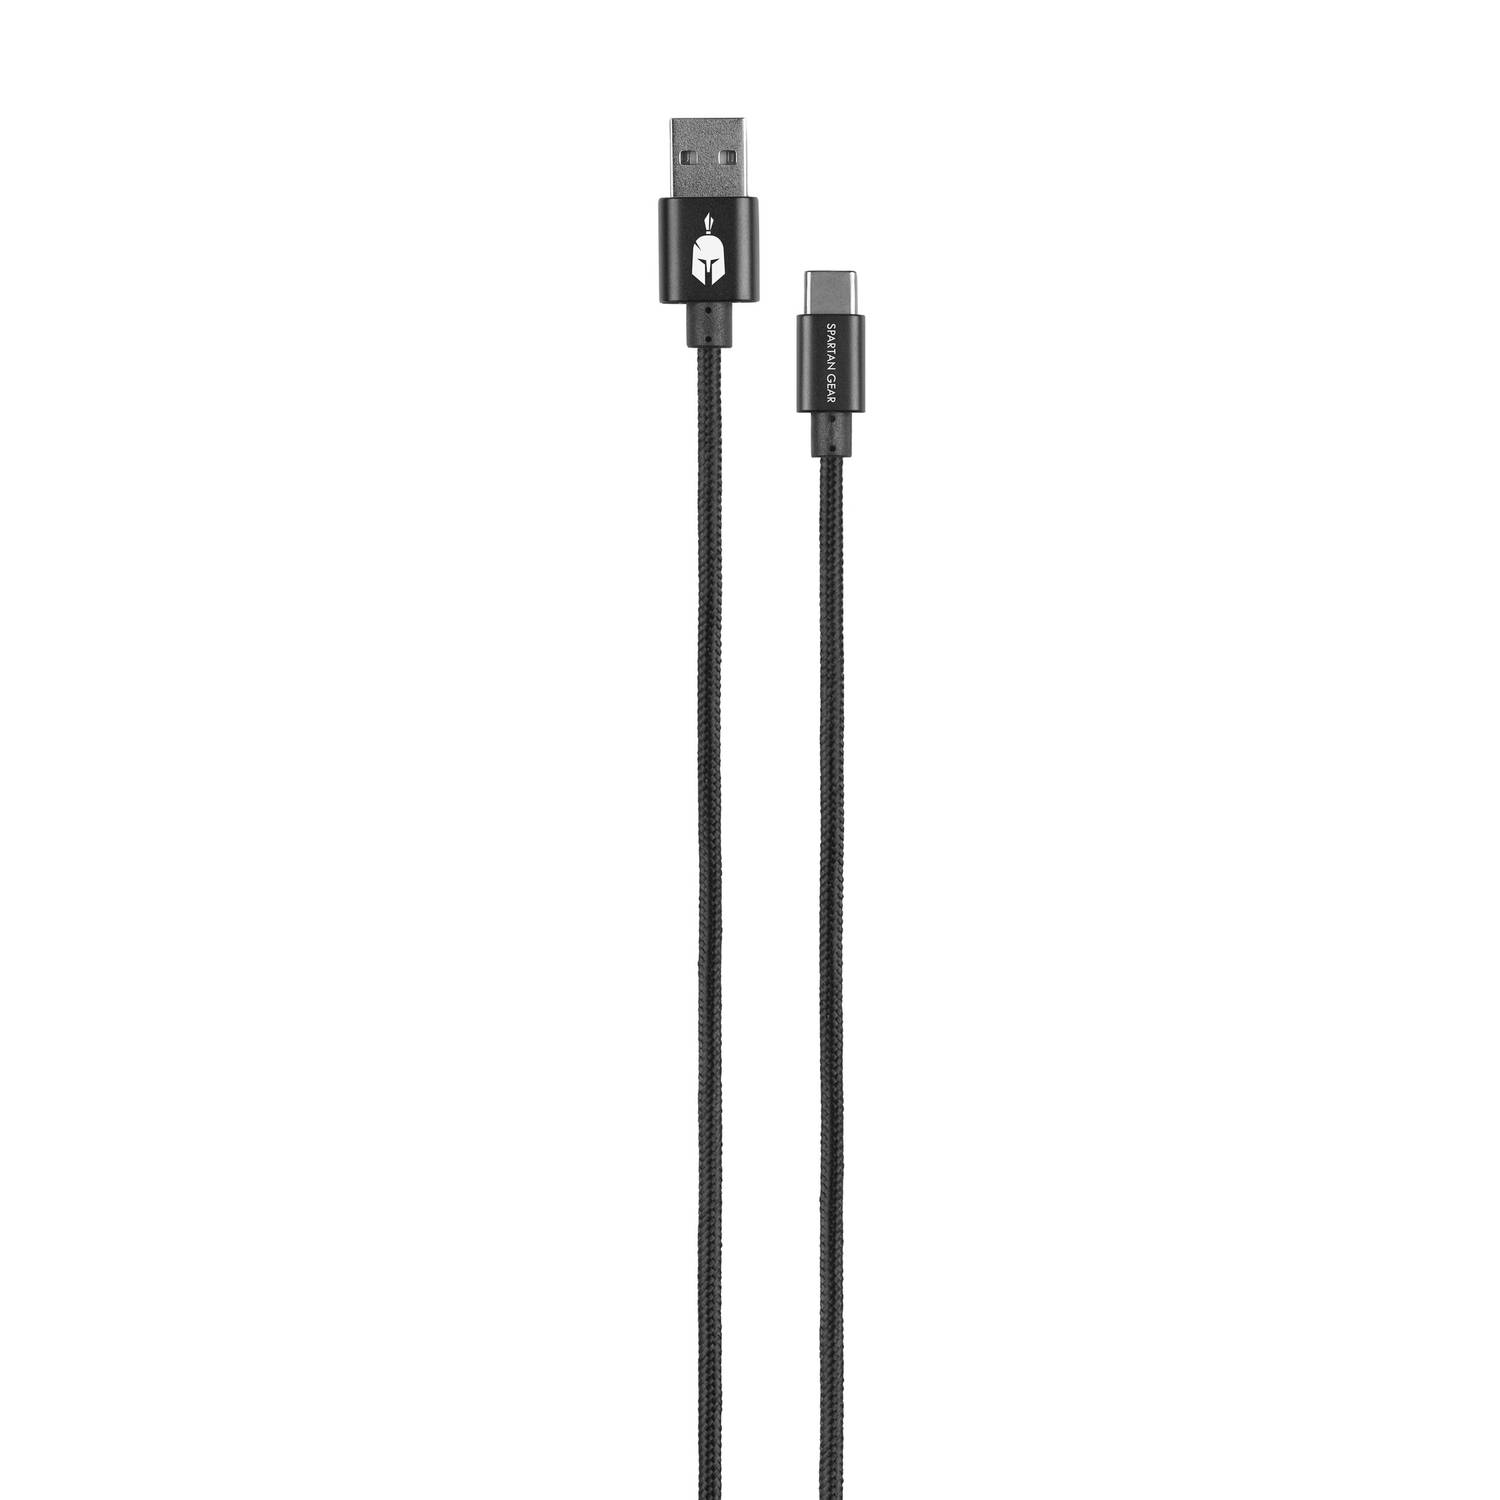 Dubbelzijdige USB-kabel (A naar C) Zwart (lengte: 2m)